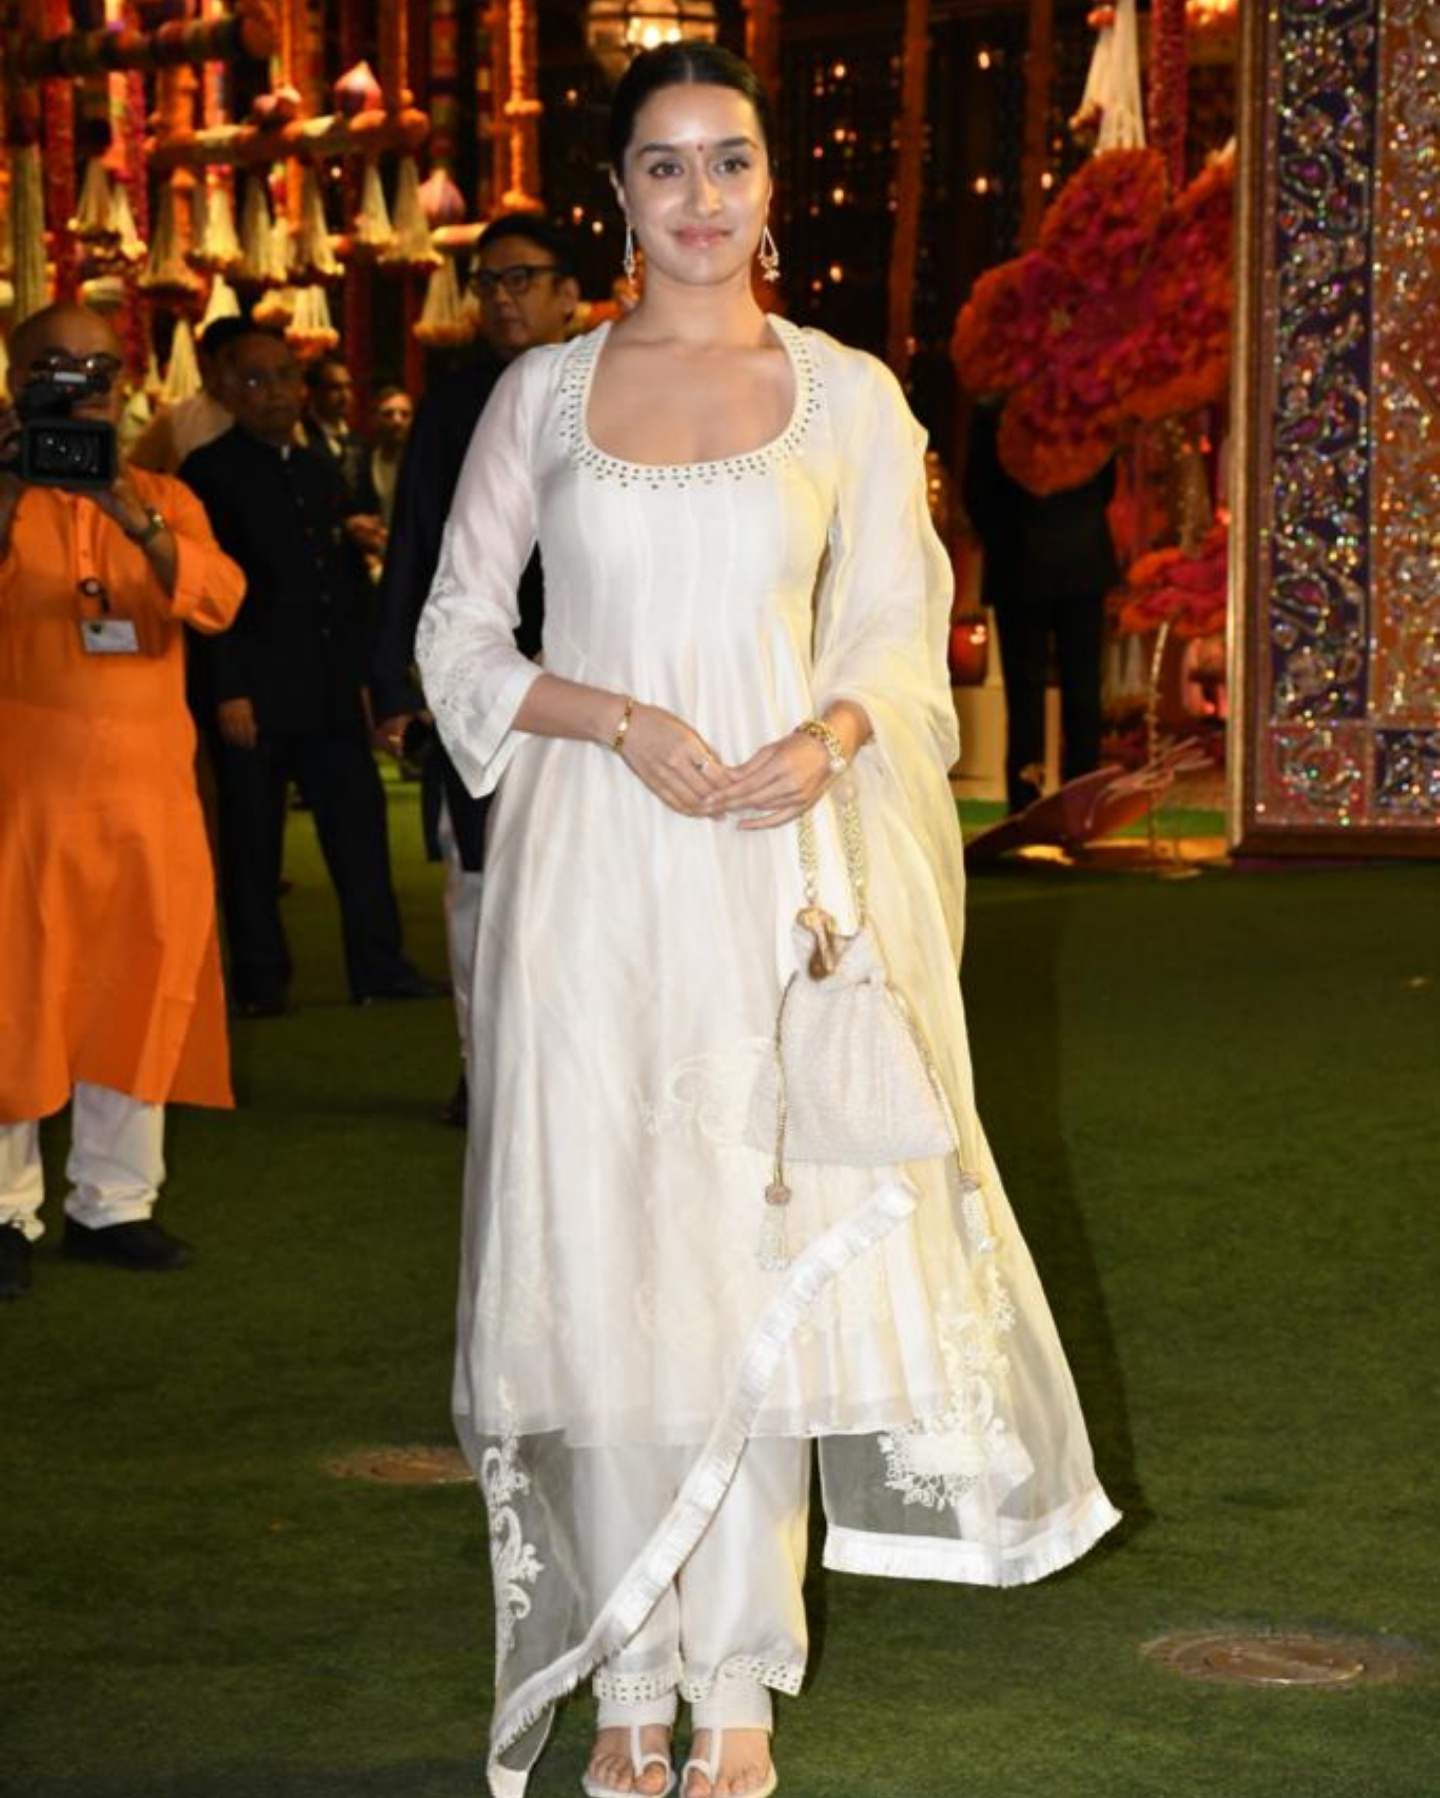 Sharaddha Kapoor arrives for Ganesh Chaturthi celebrations at the Ambani's